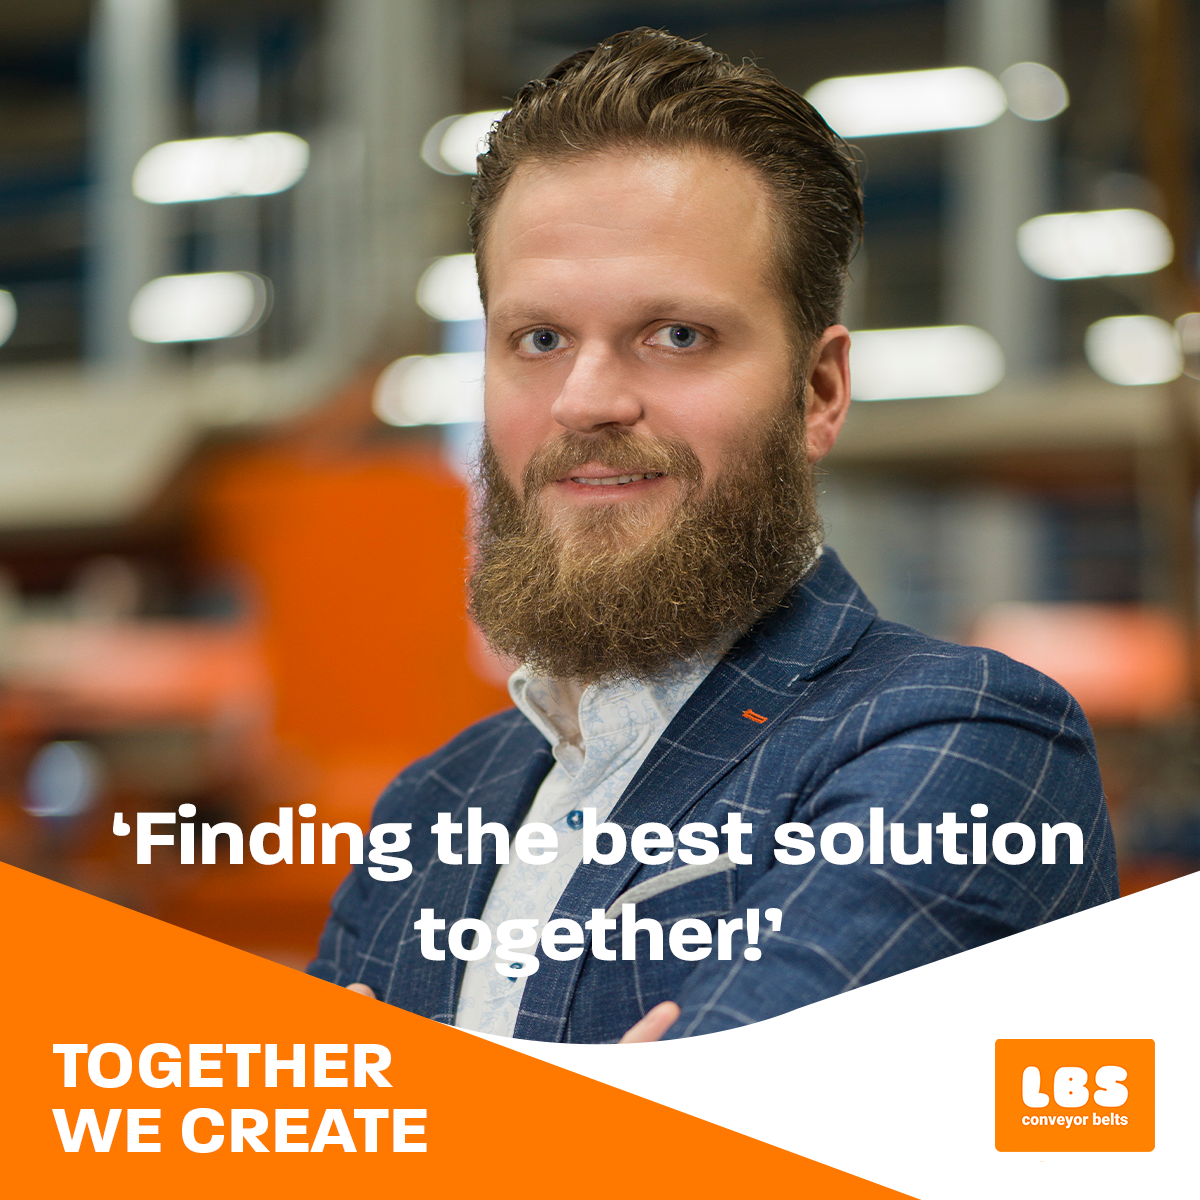 Finding the best solution together! - sparren met klant - conveyor Belts LBS